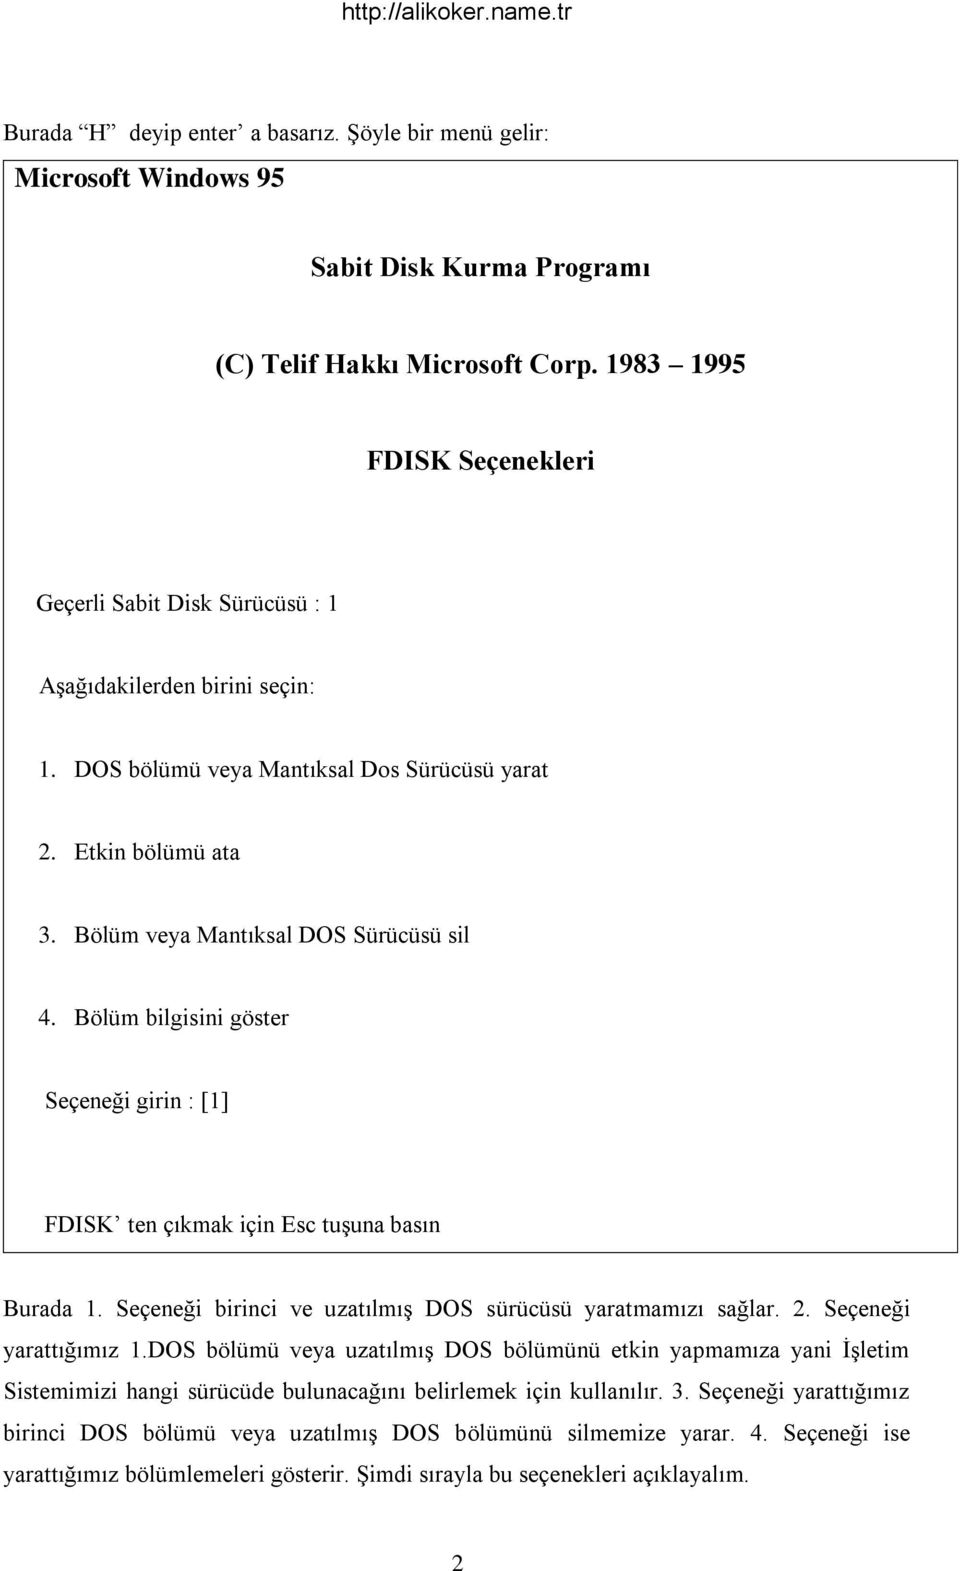 Bölüm veya Mantıksal DOS Sürücüsü sil 4. Bölüm bilgisini göster Seçeneği girin : [1] FDISK ten çıkmak için Esc tuşuna basın Burada 1. Seçeneği birinci ve uzatılmış DOS sürücüsü yaratmamızı sağlar. 2.